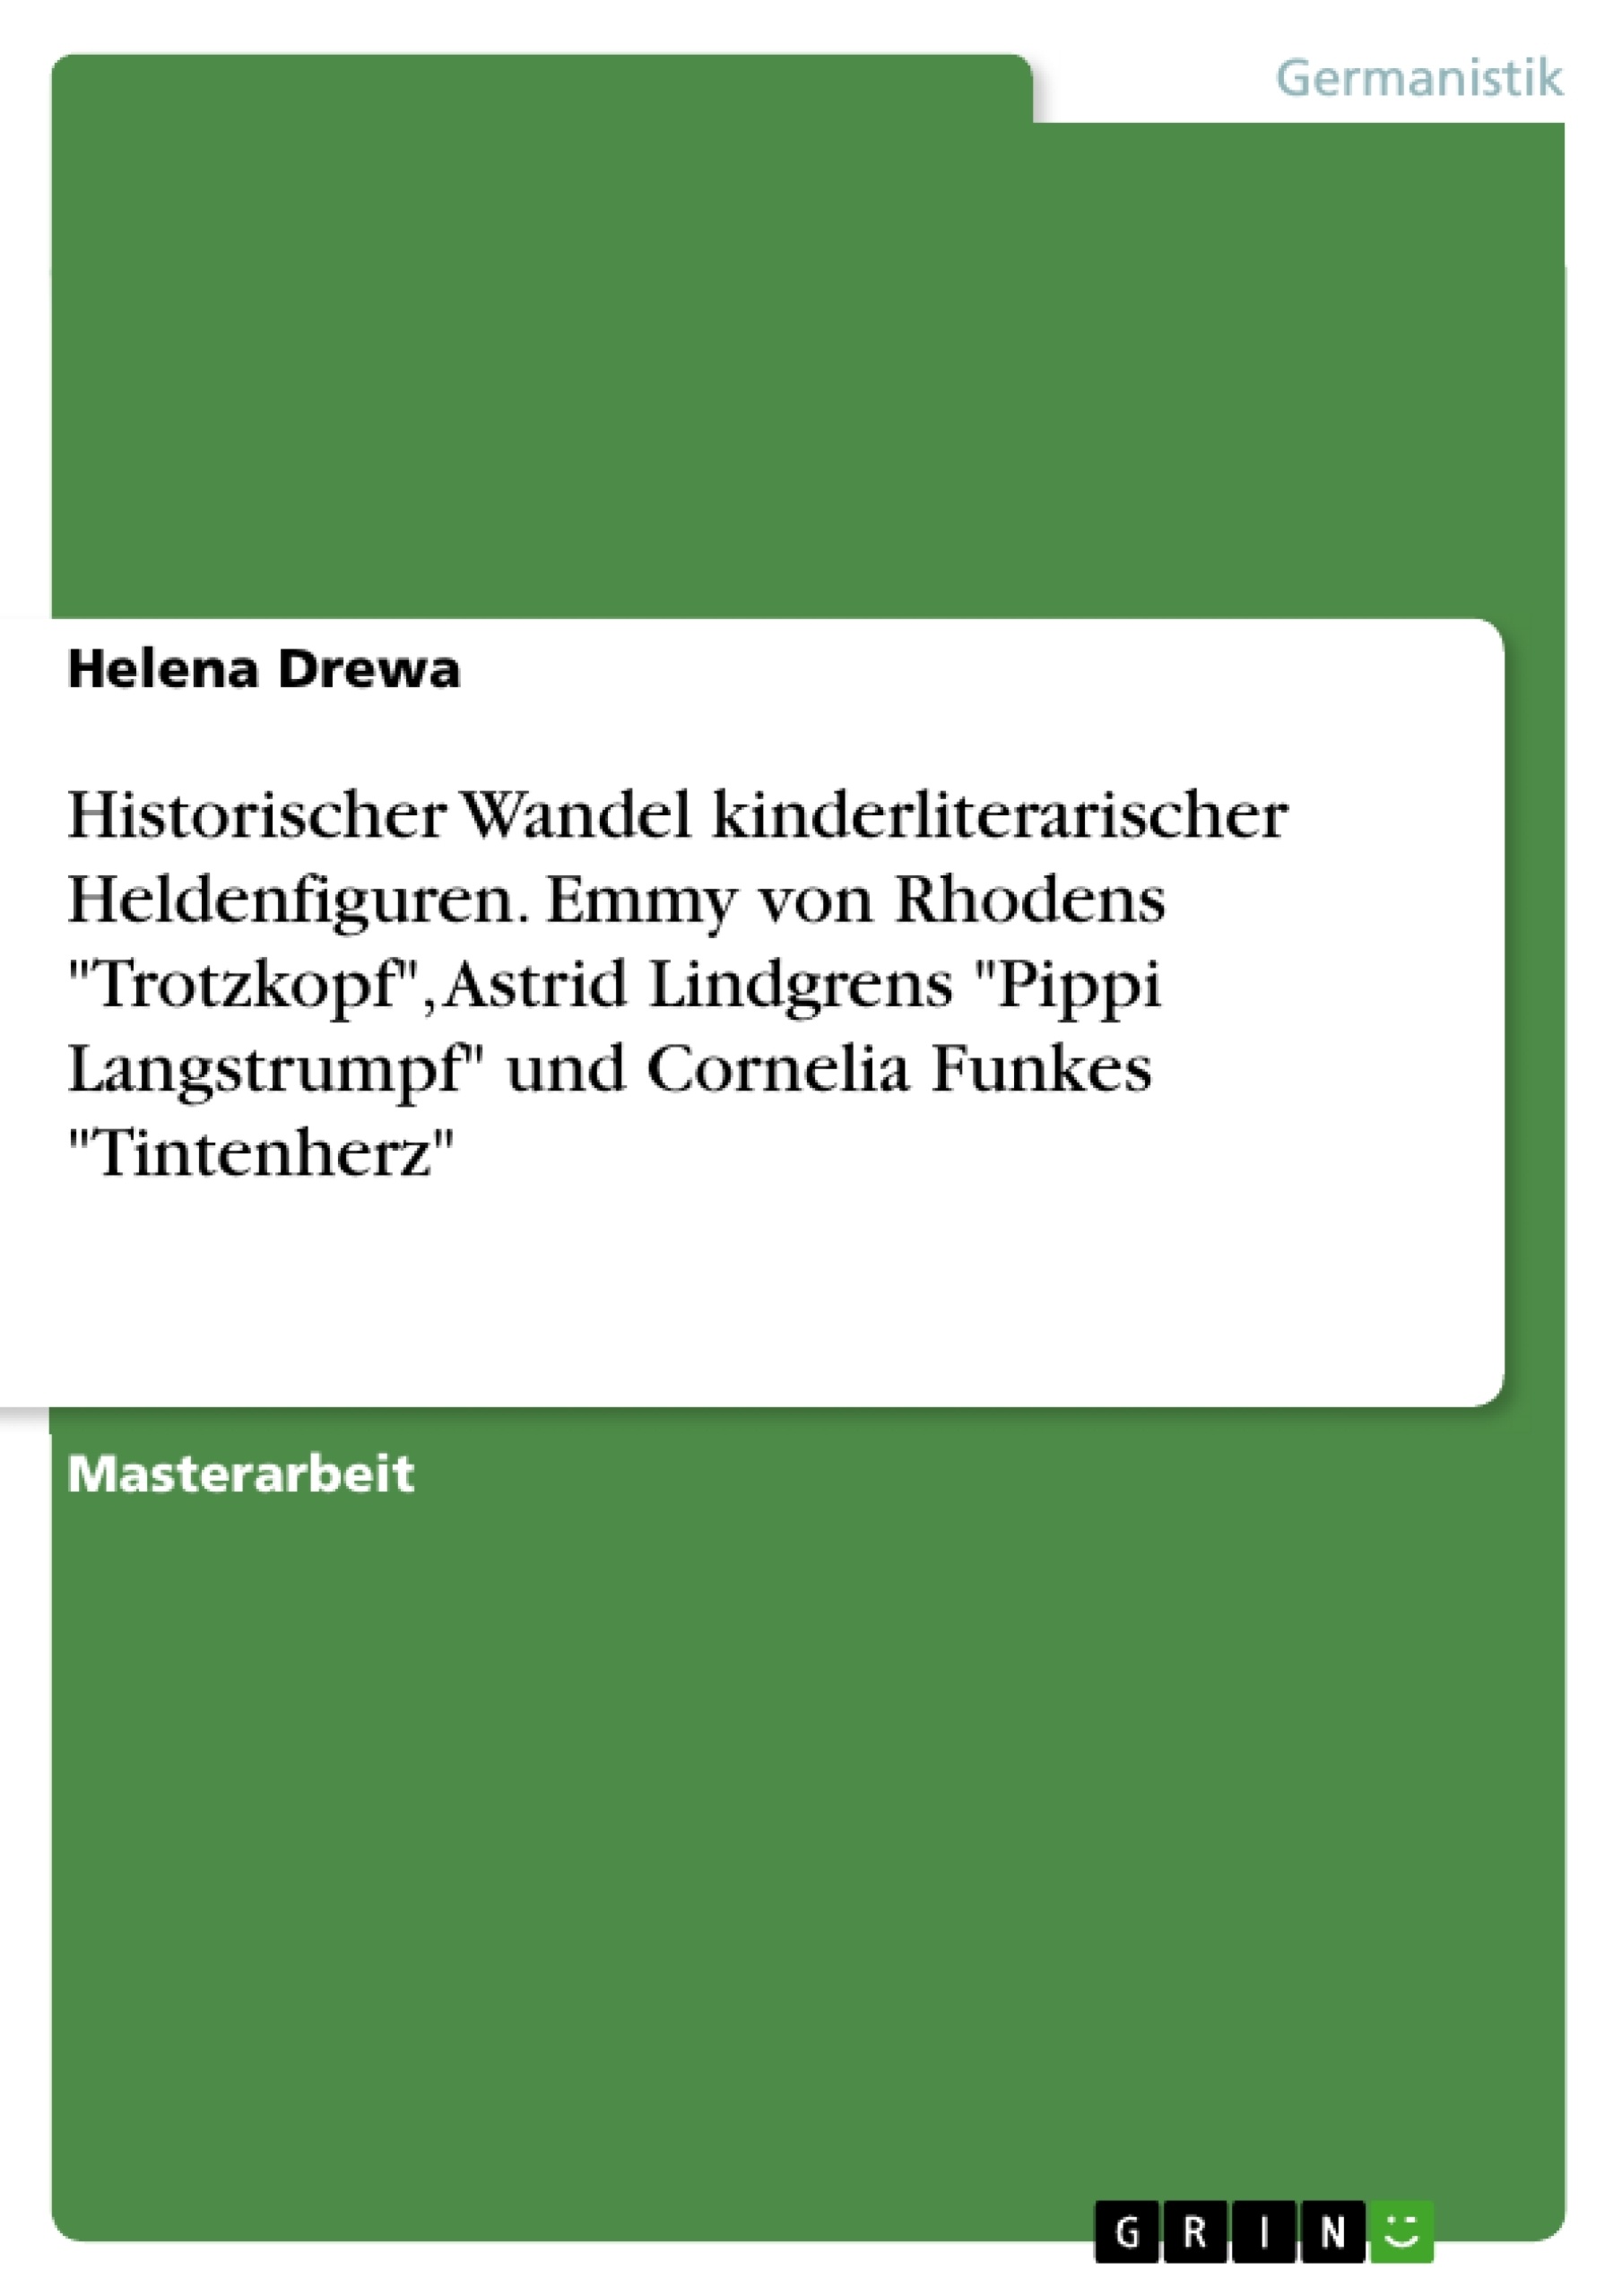 Title: Historischer Wandel kinderliterarischer Heldenfiguren. Emmy von Rhodens "Trotzkopf", Astrid Lindgrens "Pippi Langstrumpf" und Cornelia Funkes "Tintenherz"